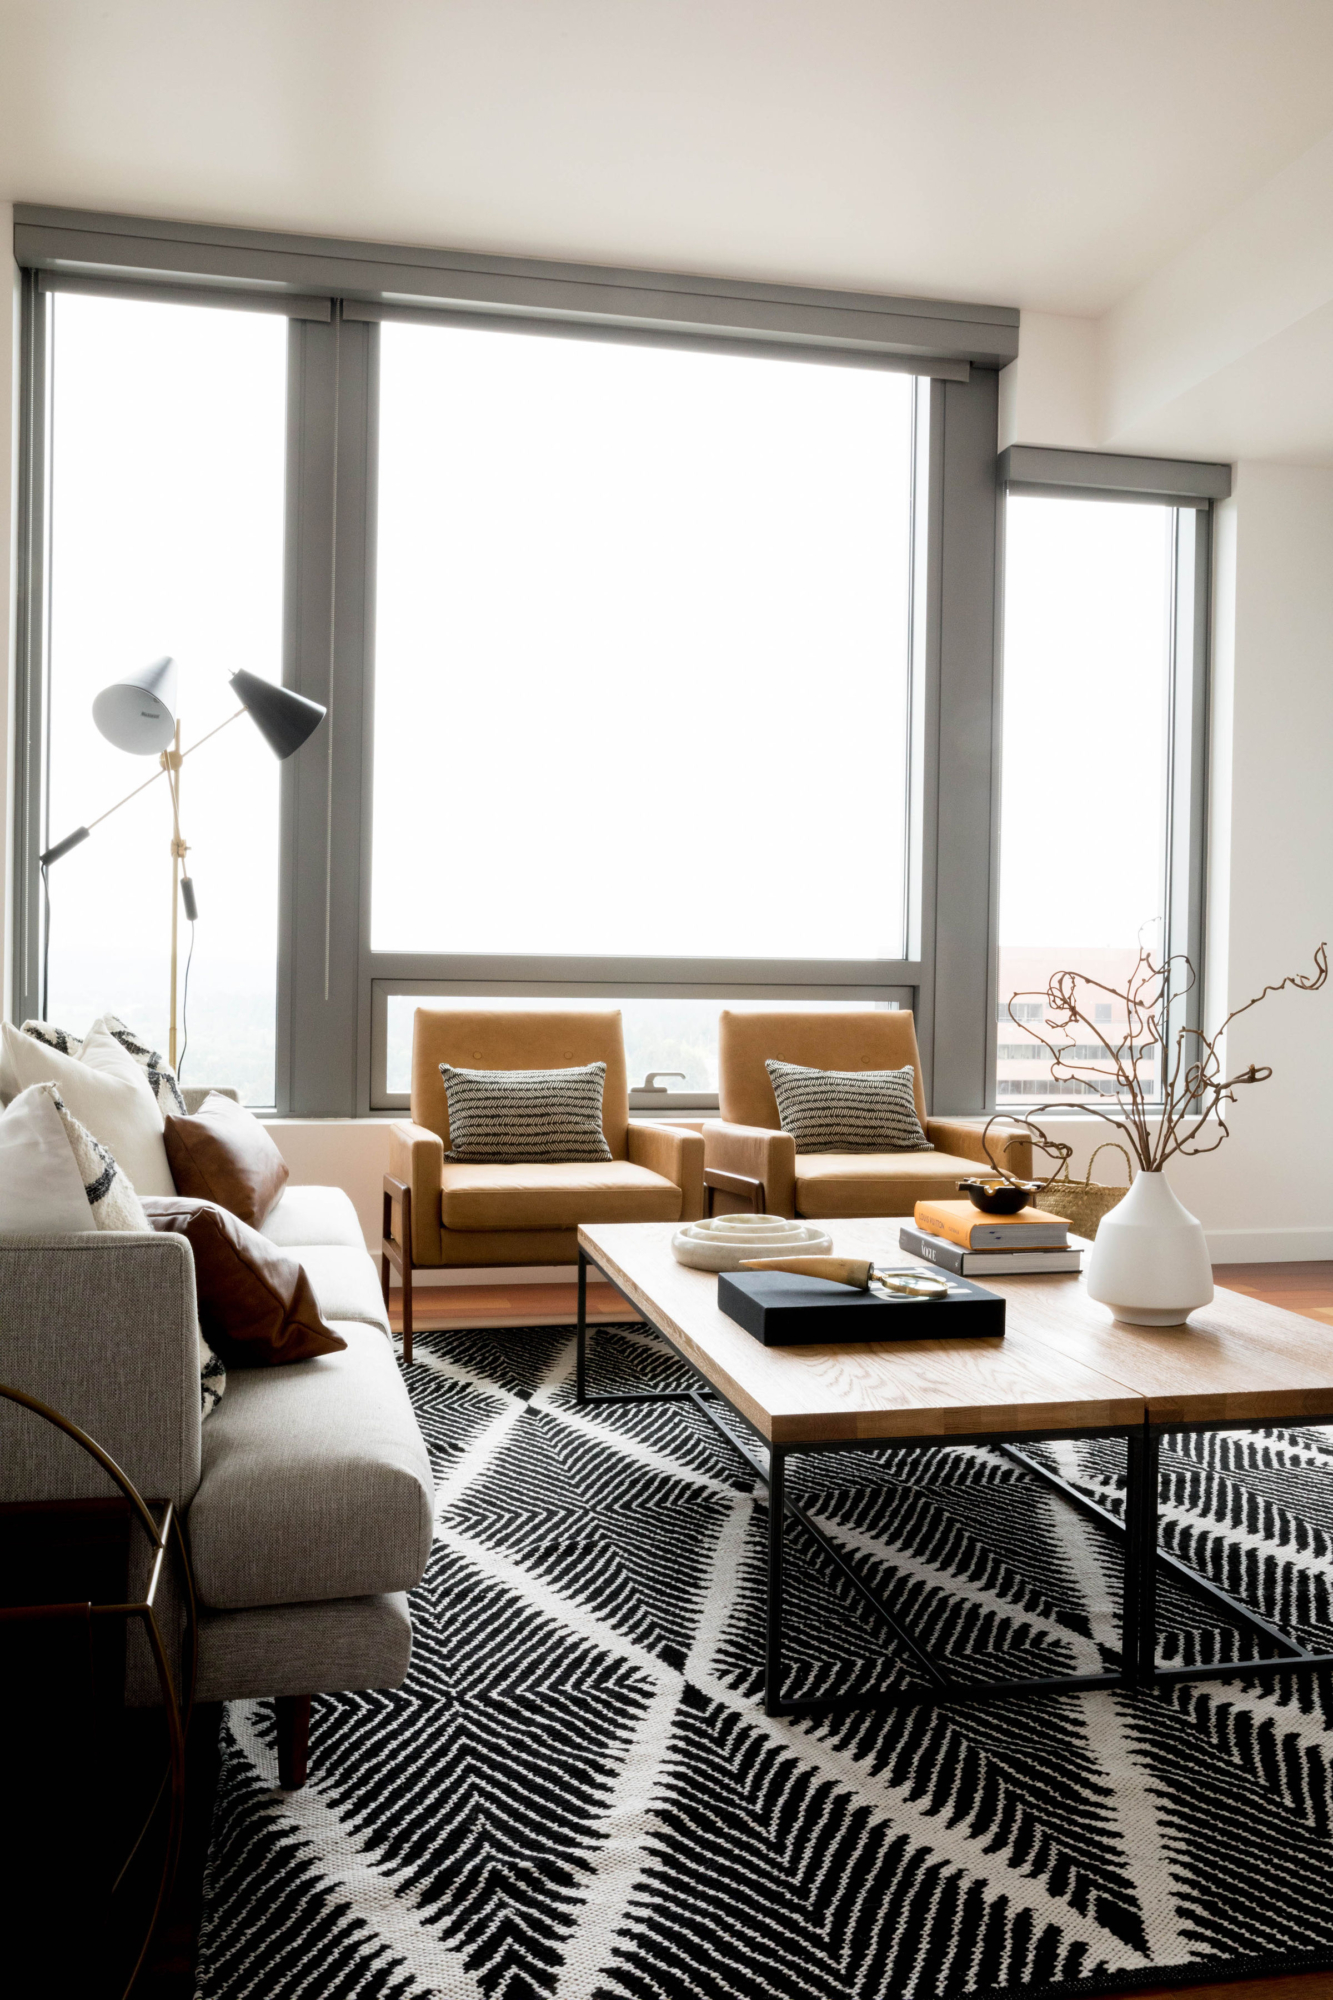 %luxury home staging %modern interior design